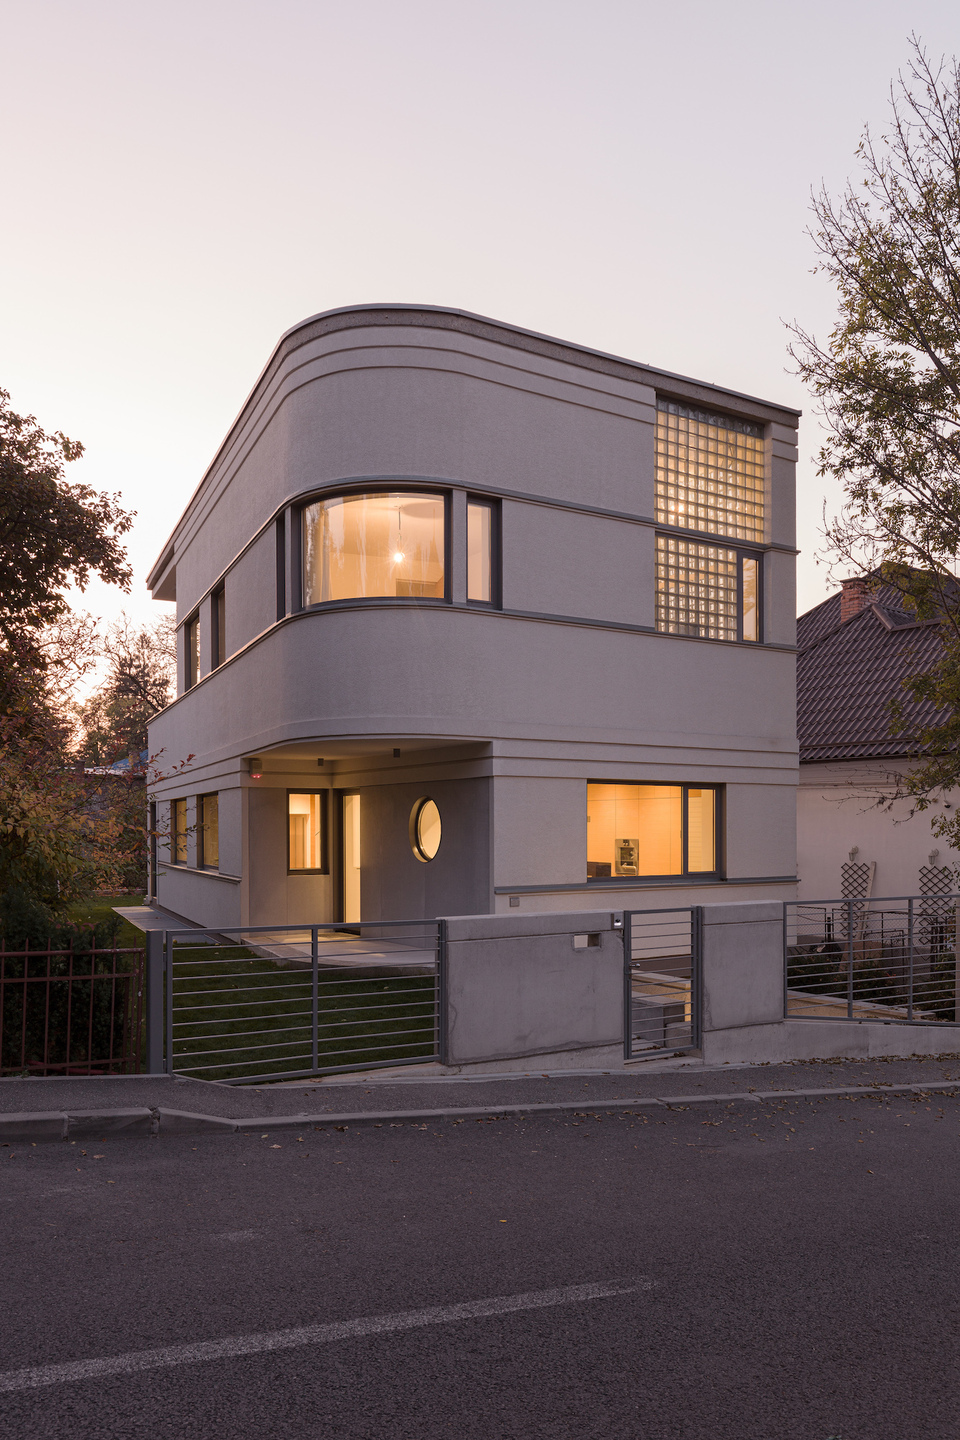 PJ-ház, 2018 – építész: Péterffy Miklós – fotó: Danyi Balázs